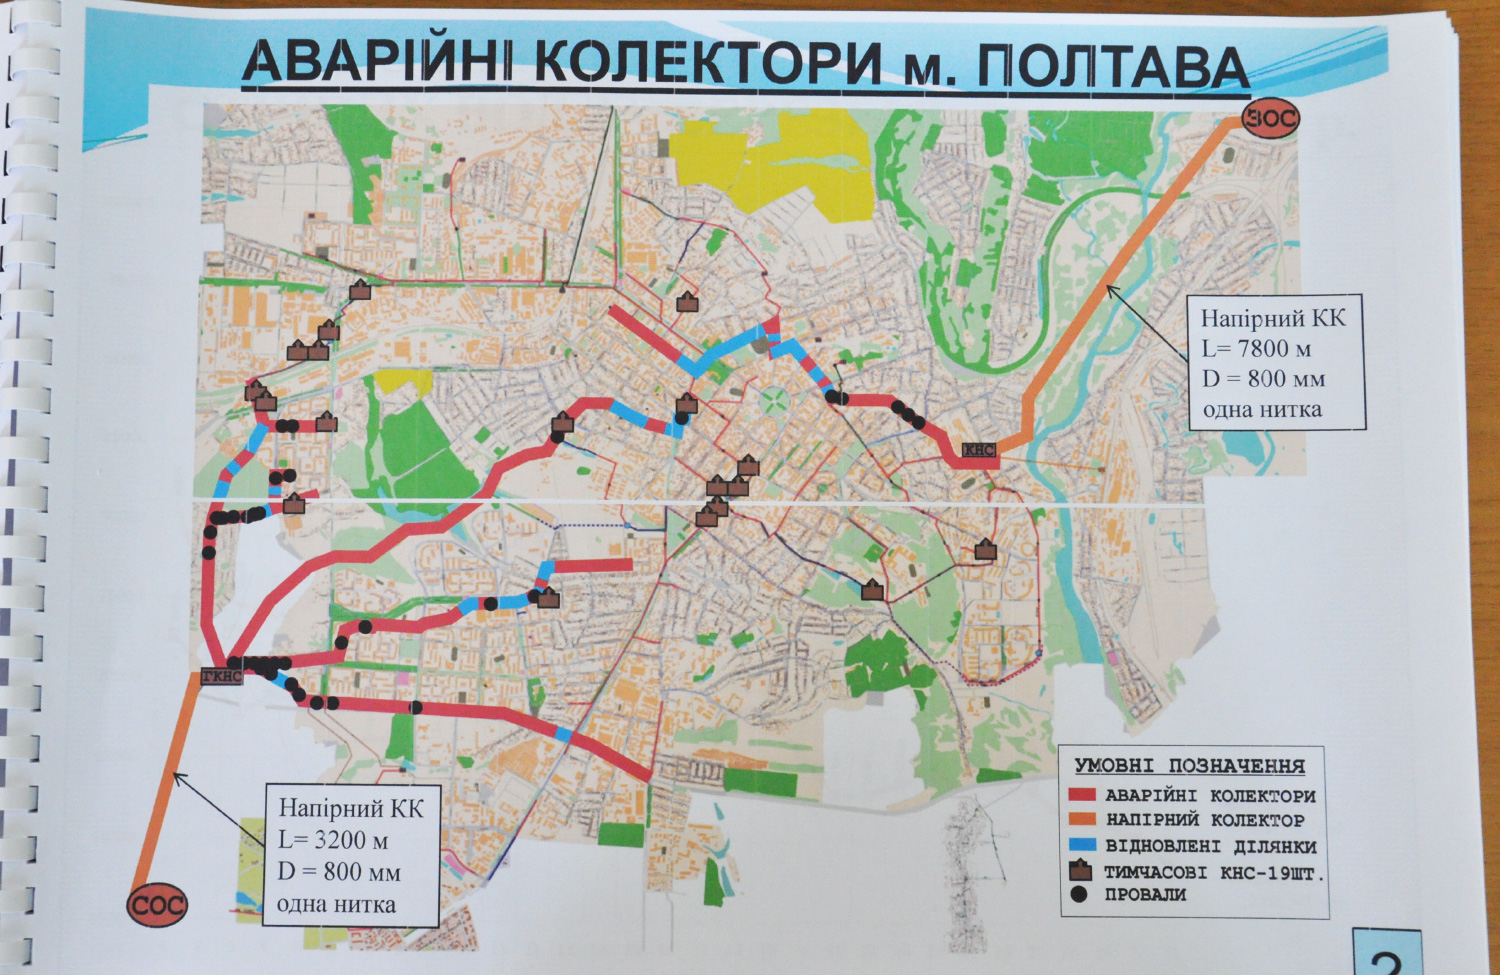 Карта аварійних колекторів міста Полтава станом на липень 2018 року